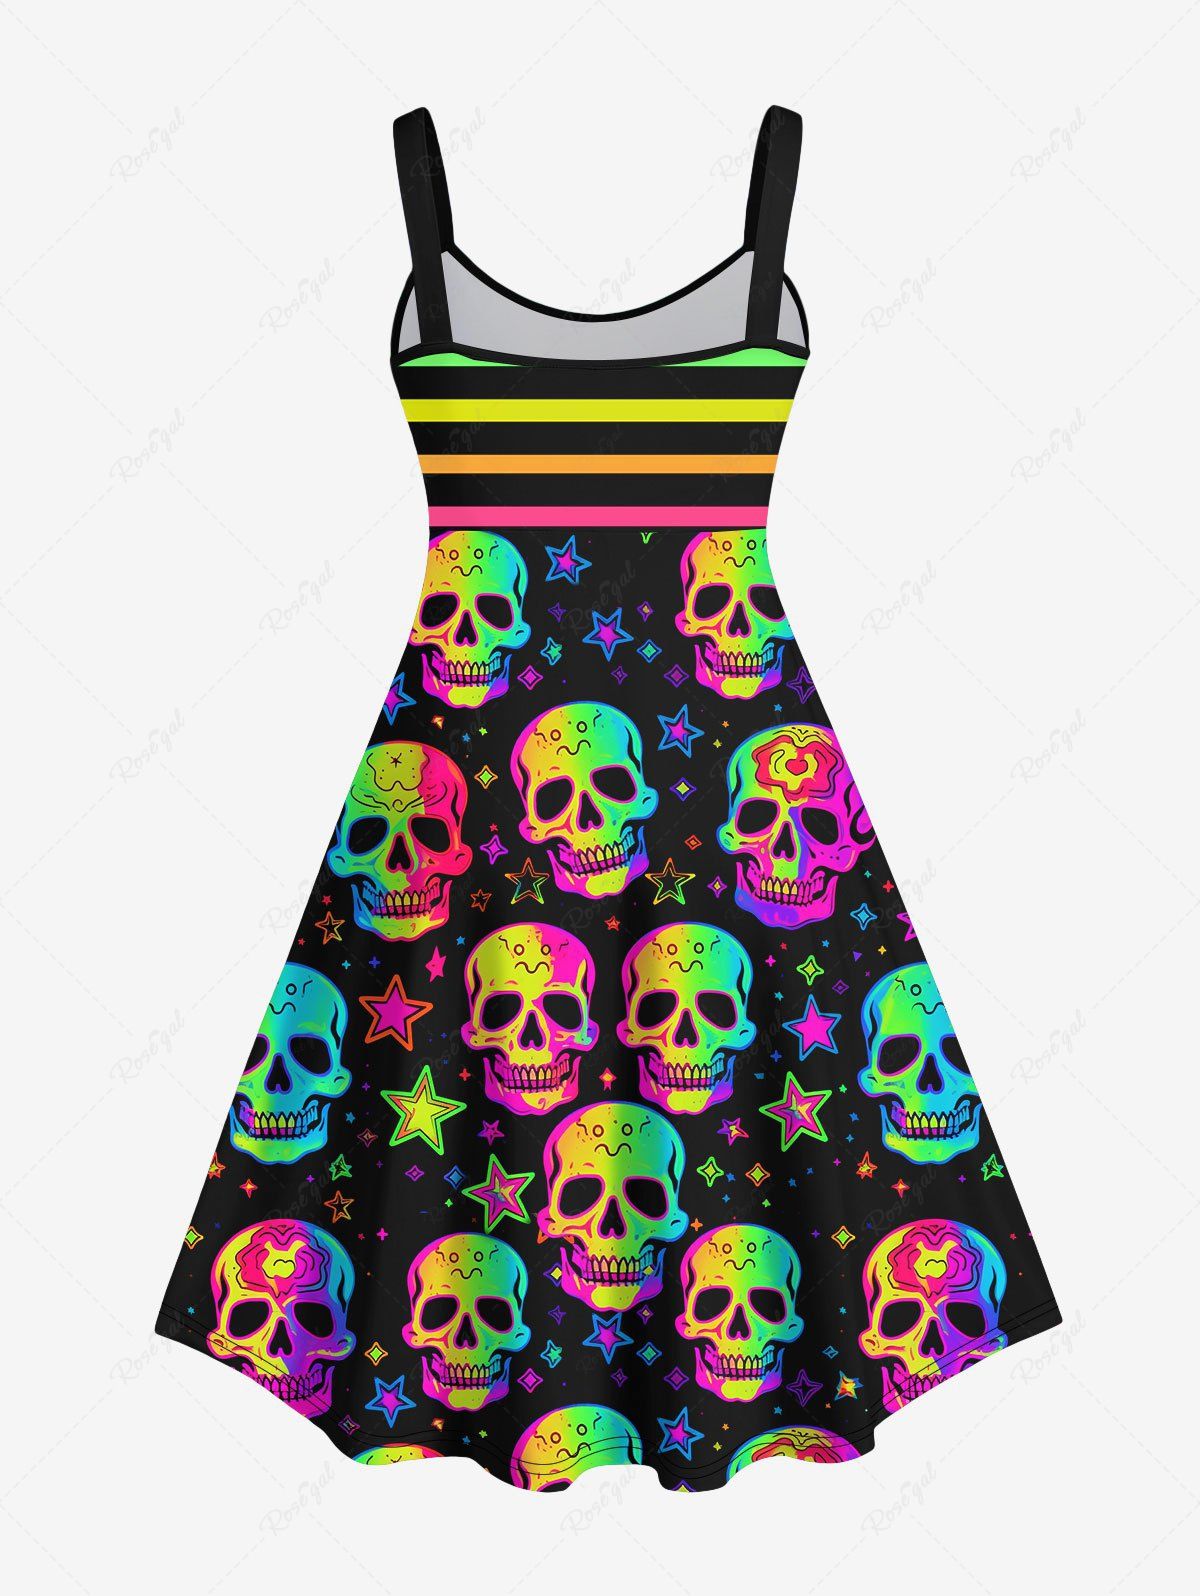 💗Lauren Loves💗 Gothic Halloween Costume Skulls Stars Stripes Print Tank Dress